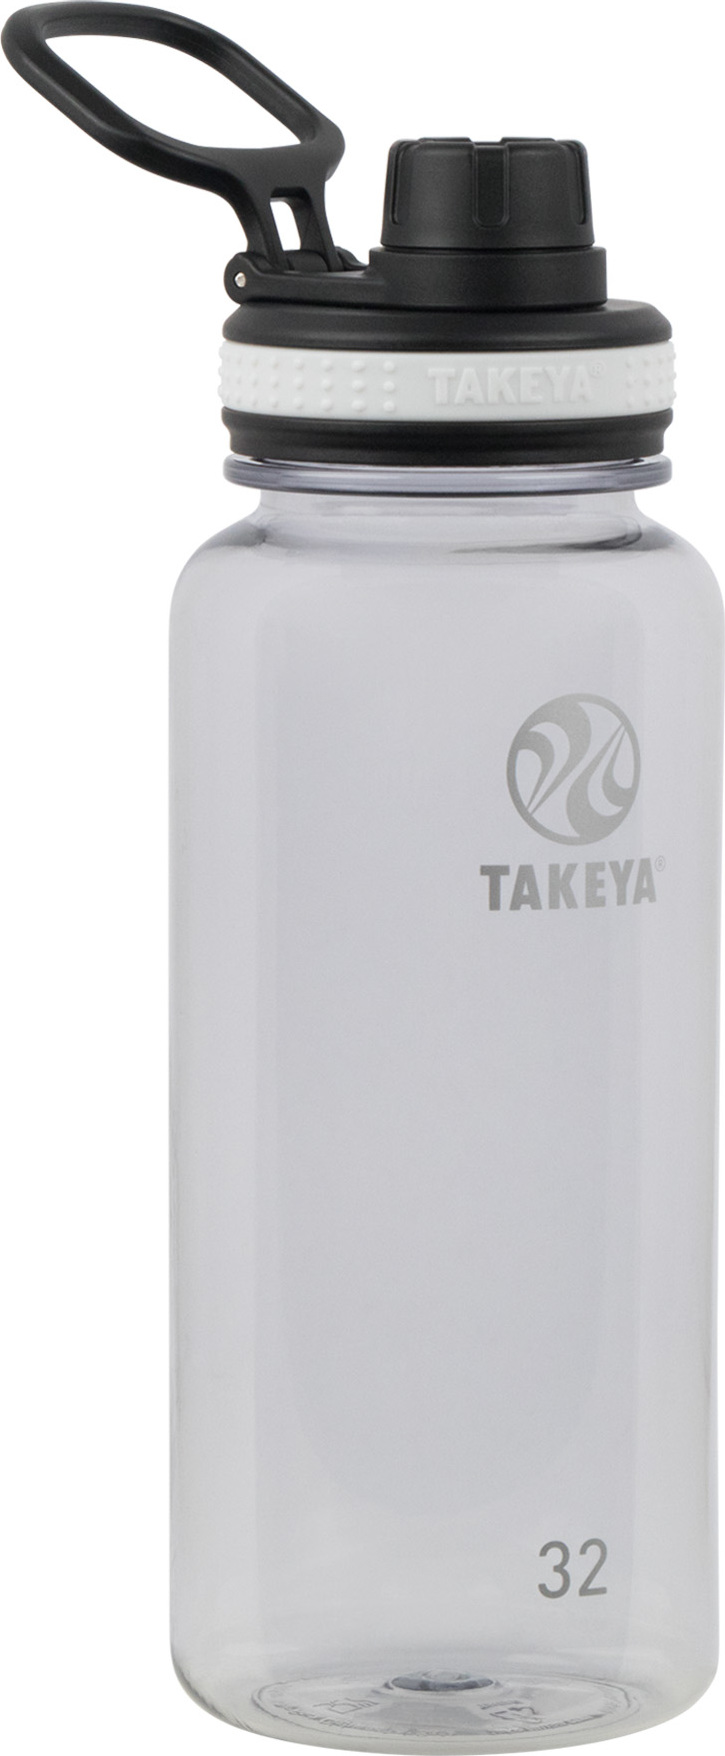 Takeya Tritan Bottle 950 ml Clear 950 ml, Clear